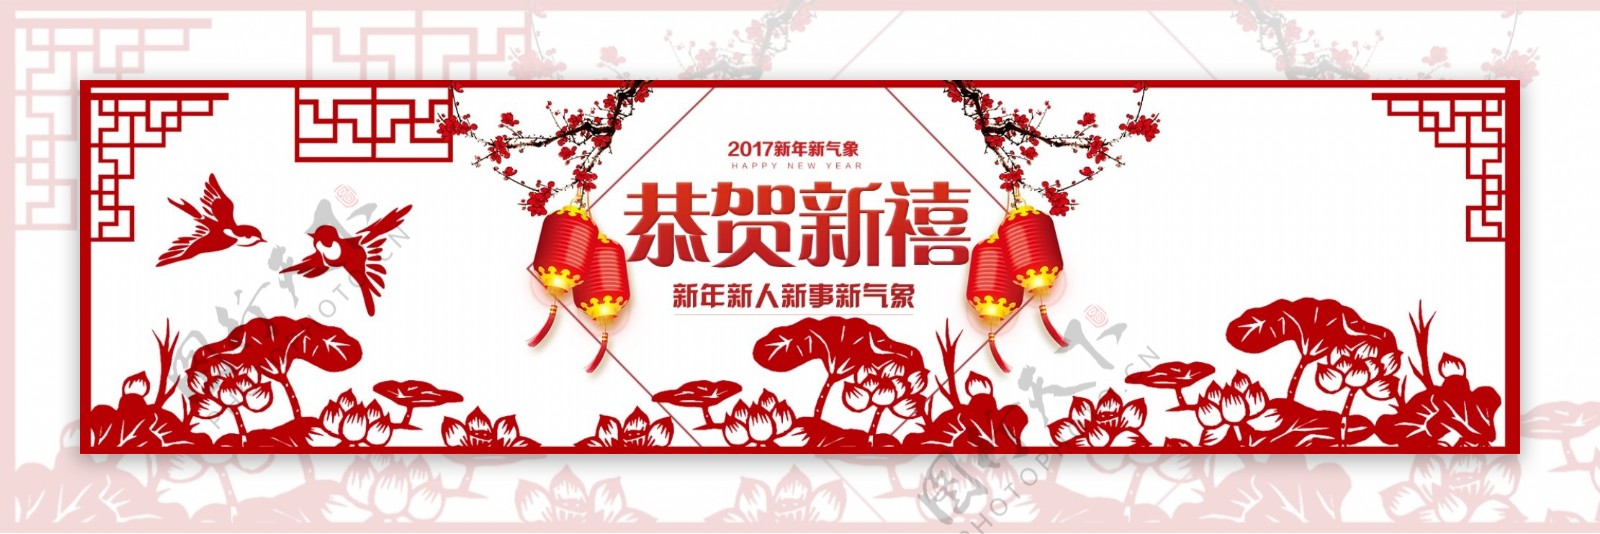 春节贺岁新年红色